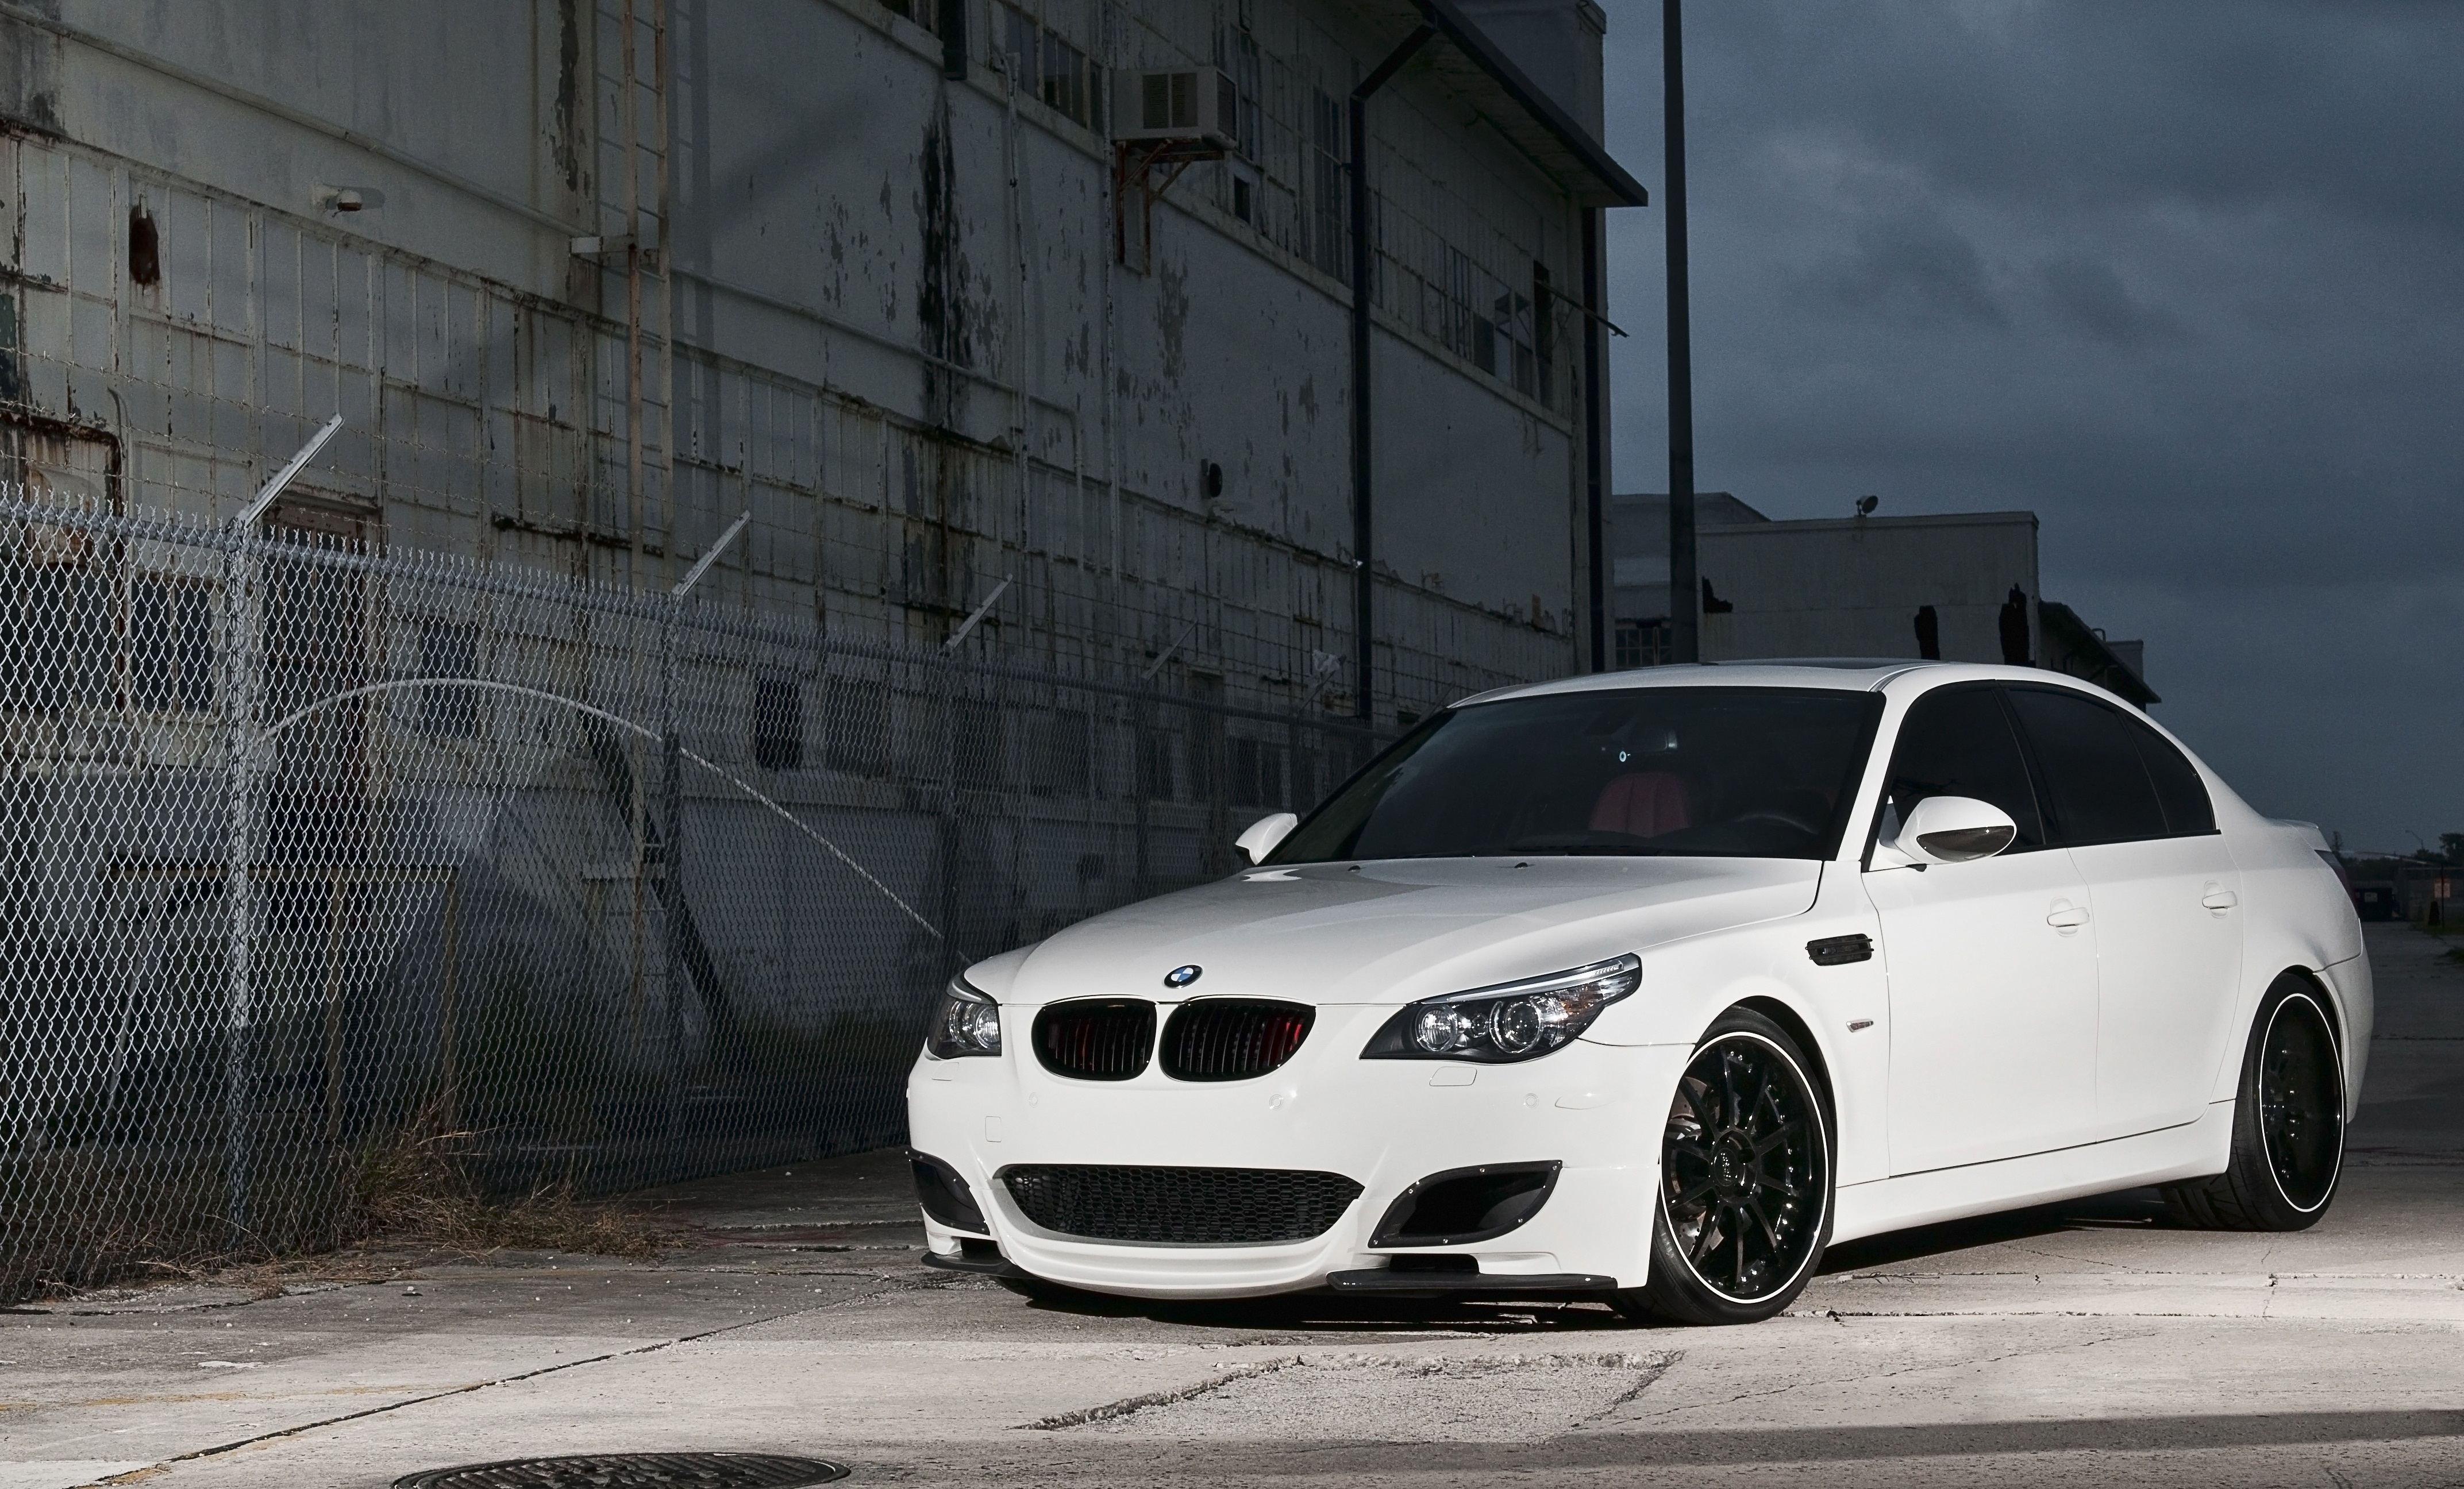 M 60 bmw. BMW m5 e60 White. BMW m5 e60 белая. BMW 5 e60 белая. BMW 5 e60 m5.